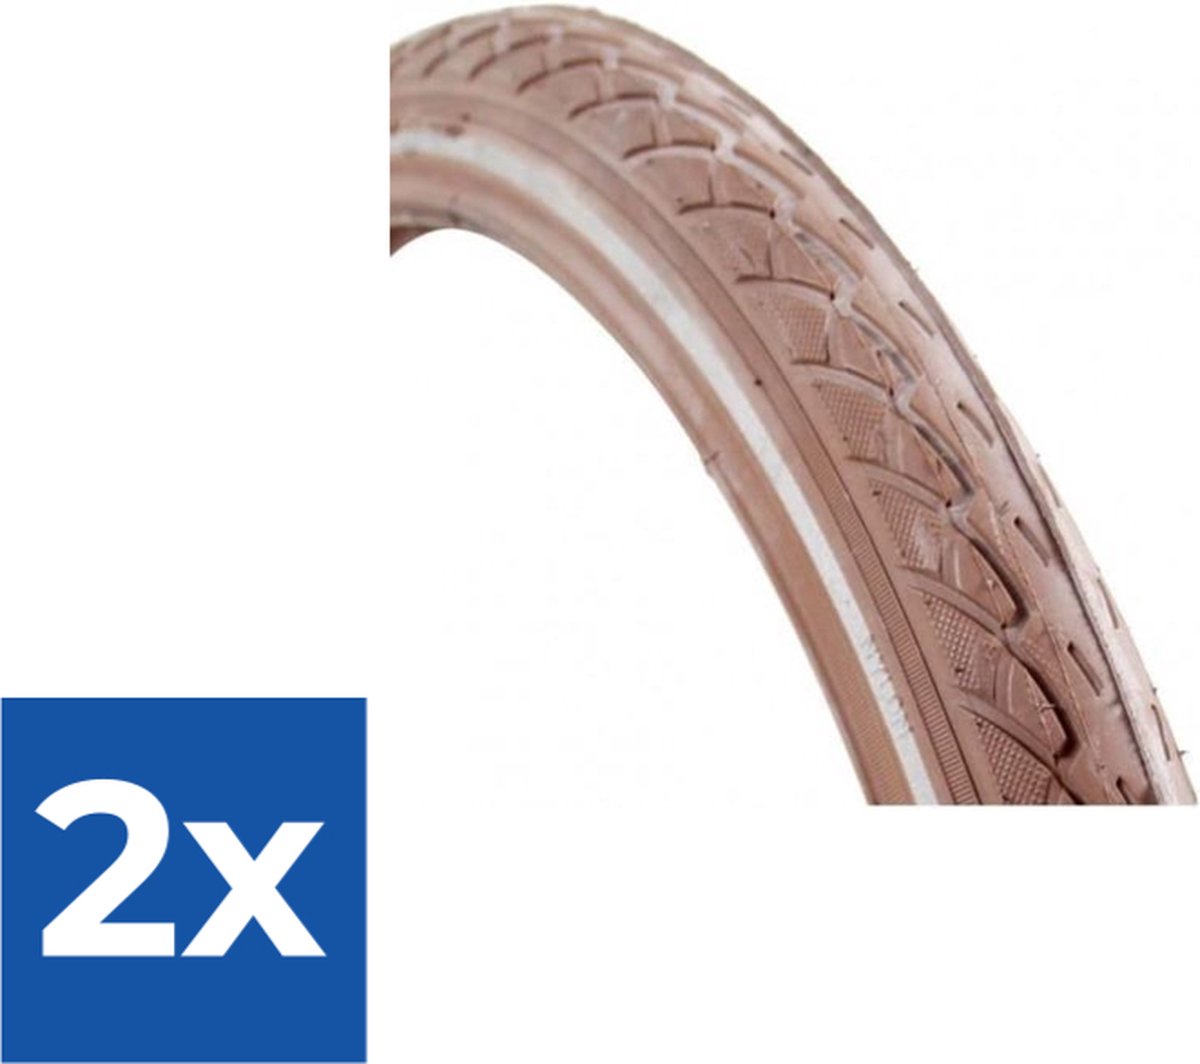 Deli Tire Buitenband SA-206 26 x 1.75 br refl - Voordeelverpakking 2 stuks